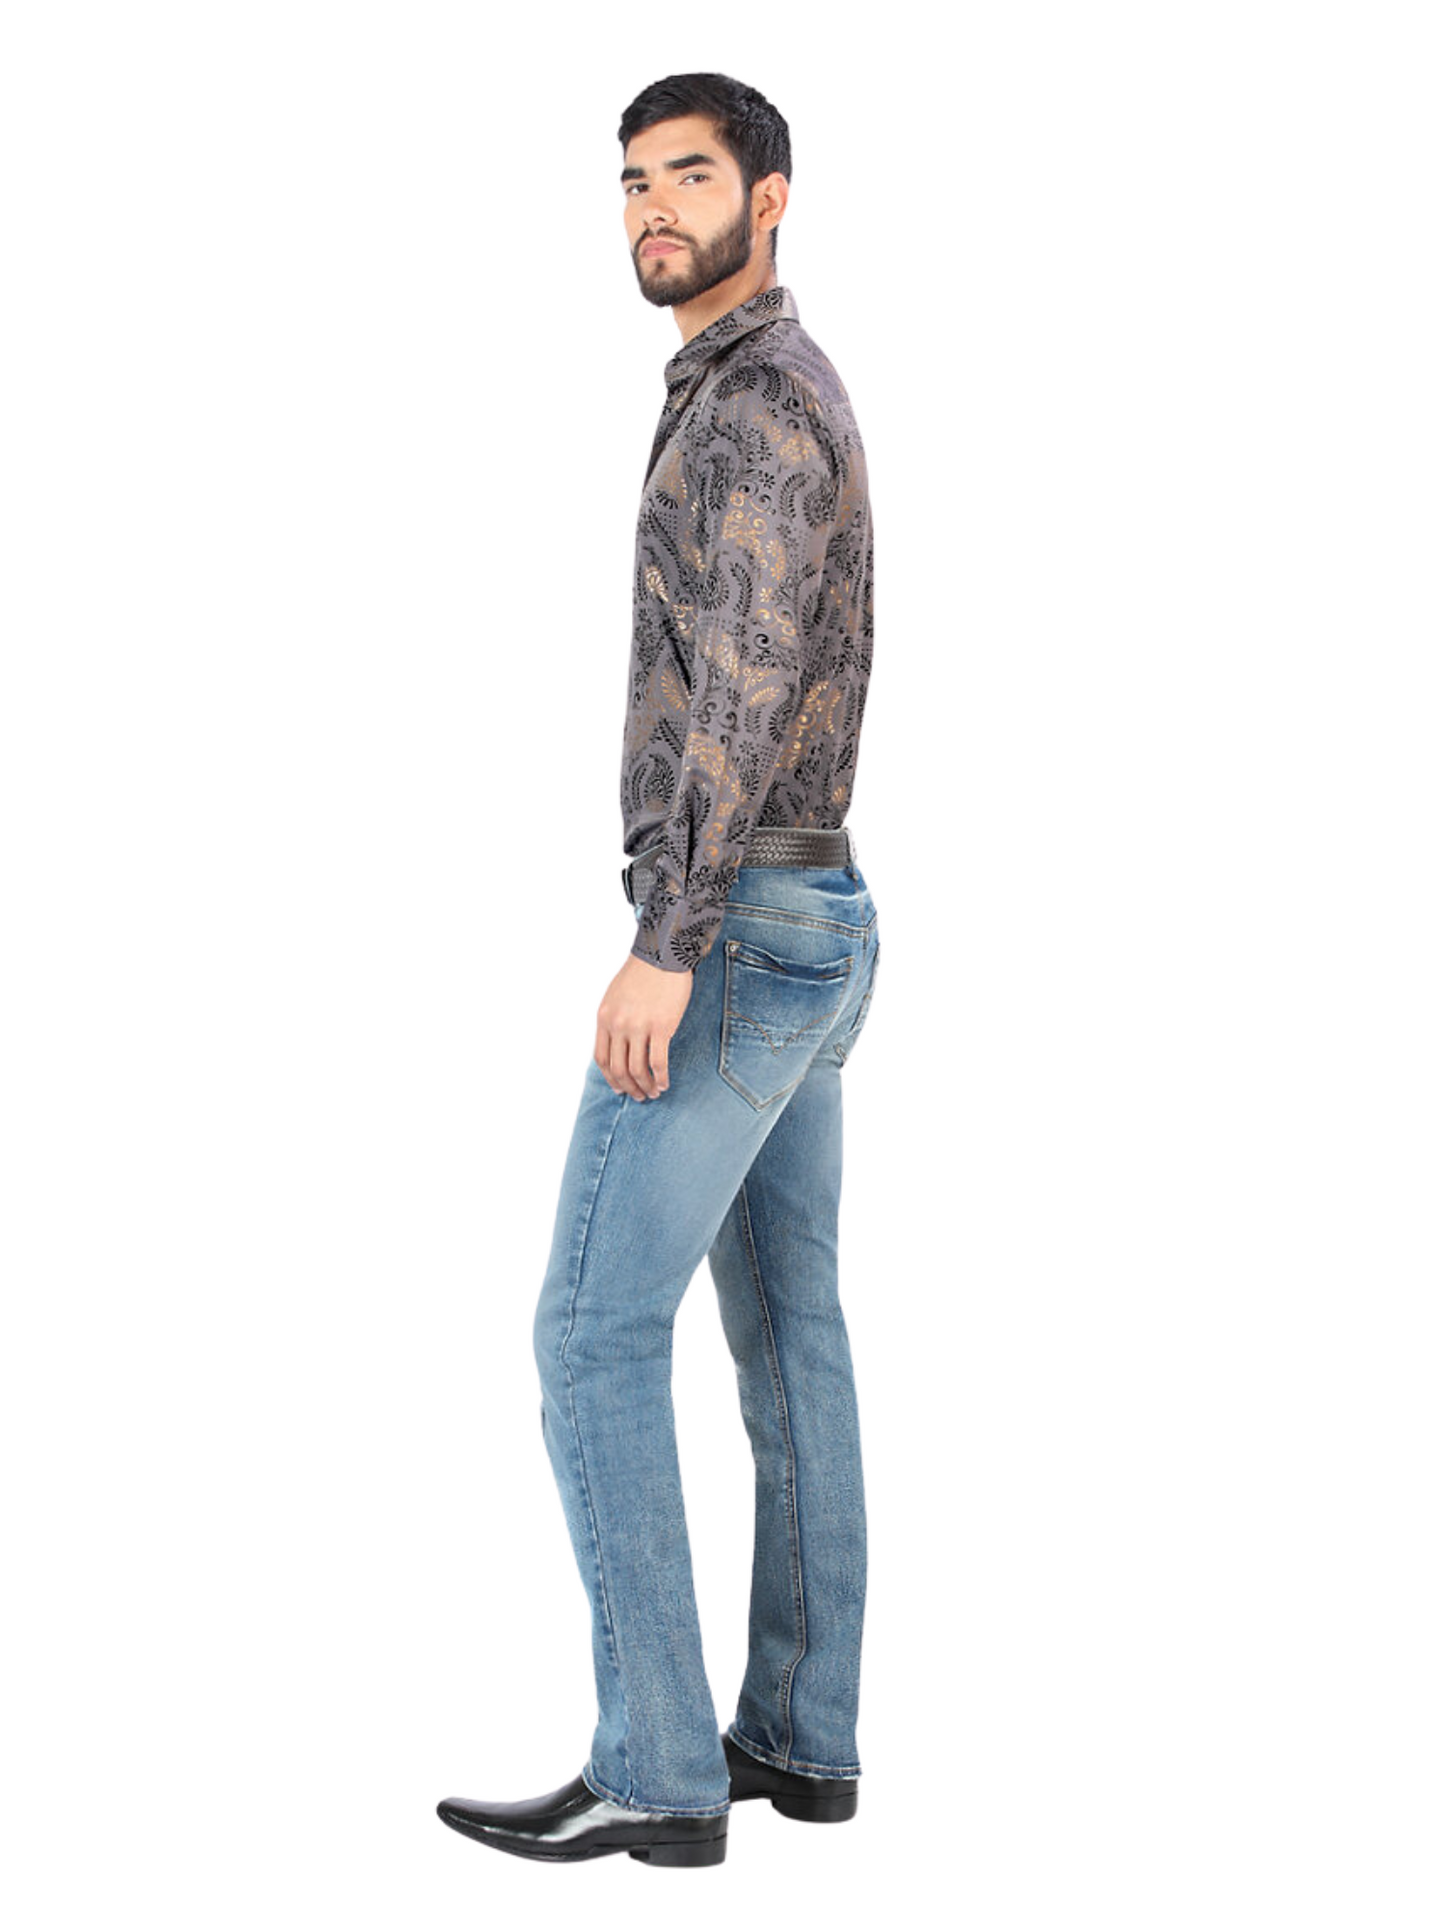 Pantalon Vaquero de Mezclilla Stretch para Hombre 'Montero' - ID: 5300 Pantalones de Vaquero Montero 